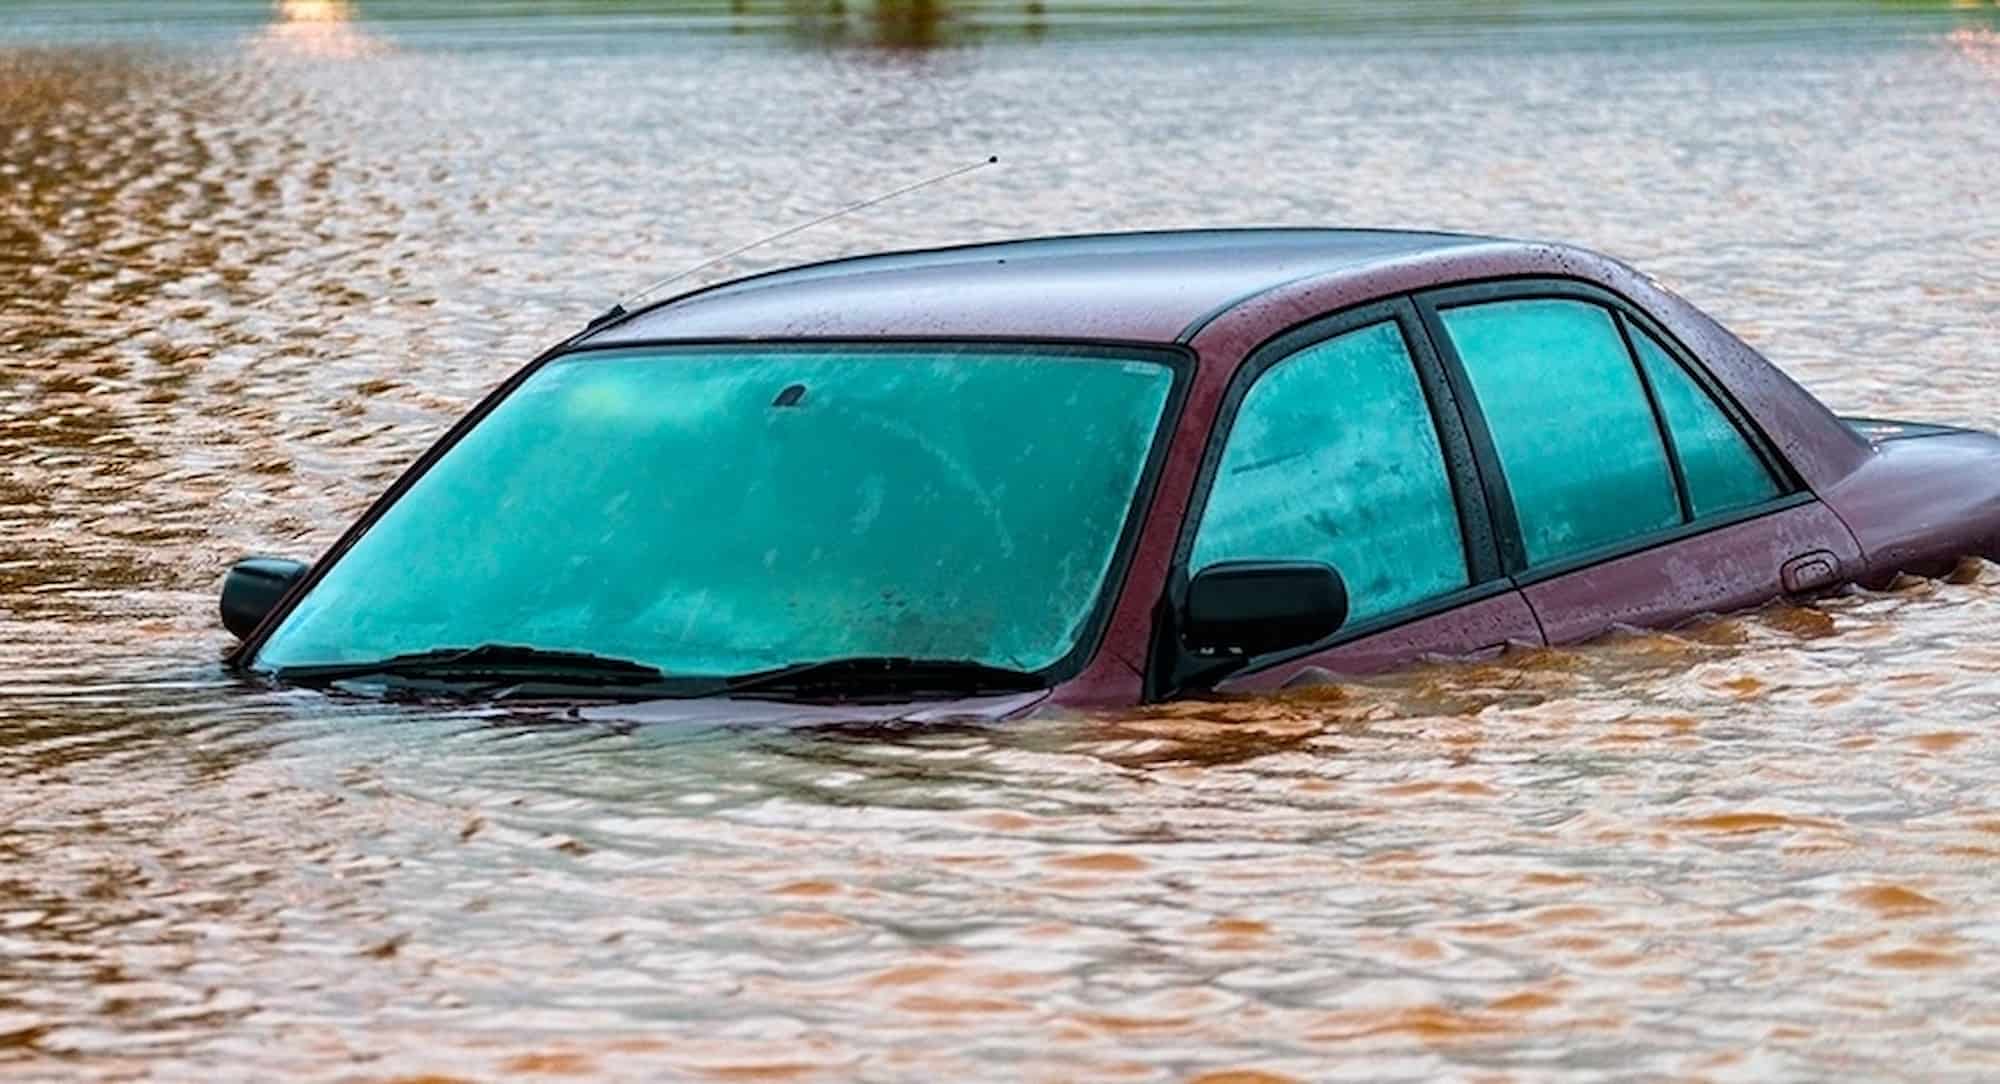 p car flood 650628670 1